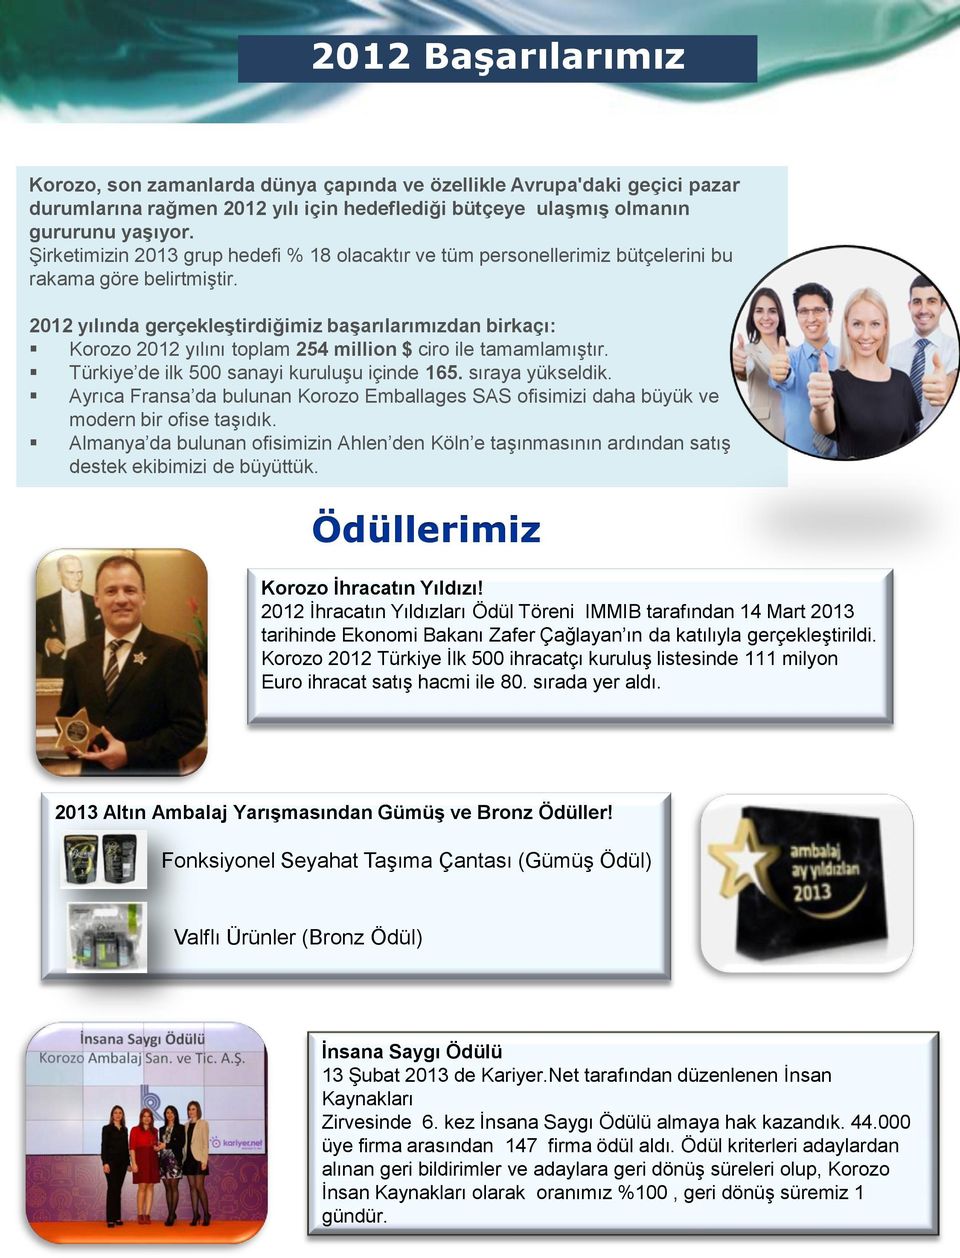 2012 yılında gerçekleştirdiğimiz başarılarımızdan birkaçı: Korozo 2012 yılını toplam 254 million $ ciro ile tamamlamıştır. Türkiye de ilk 500 sanayi kuruluşu içinde 165. sıraya yükseldik.